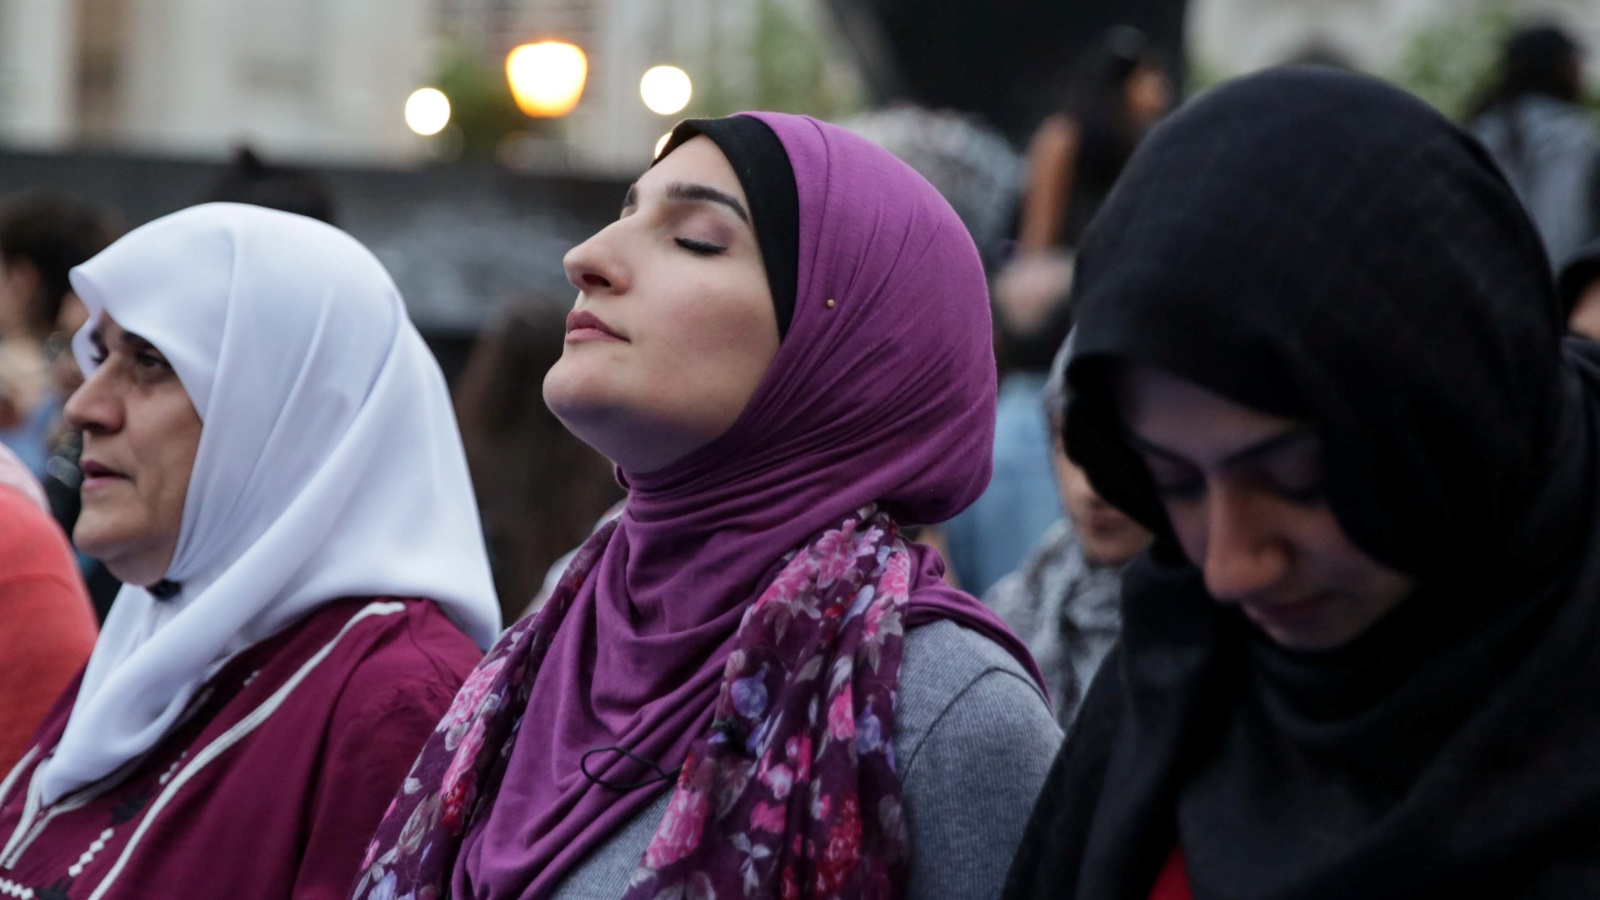 العينة العربية-المسلمة من الخيارات المفضلة لكتاب السيناريو بهوليود(رويترز)